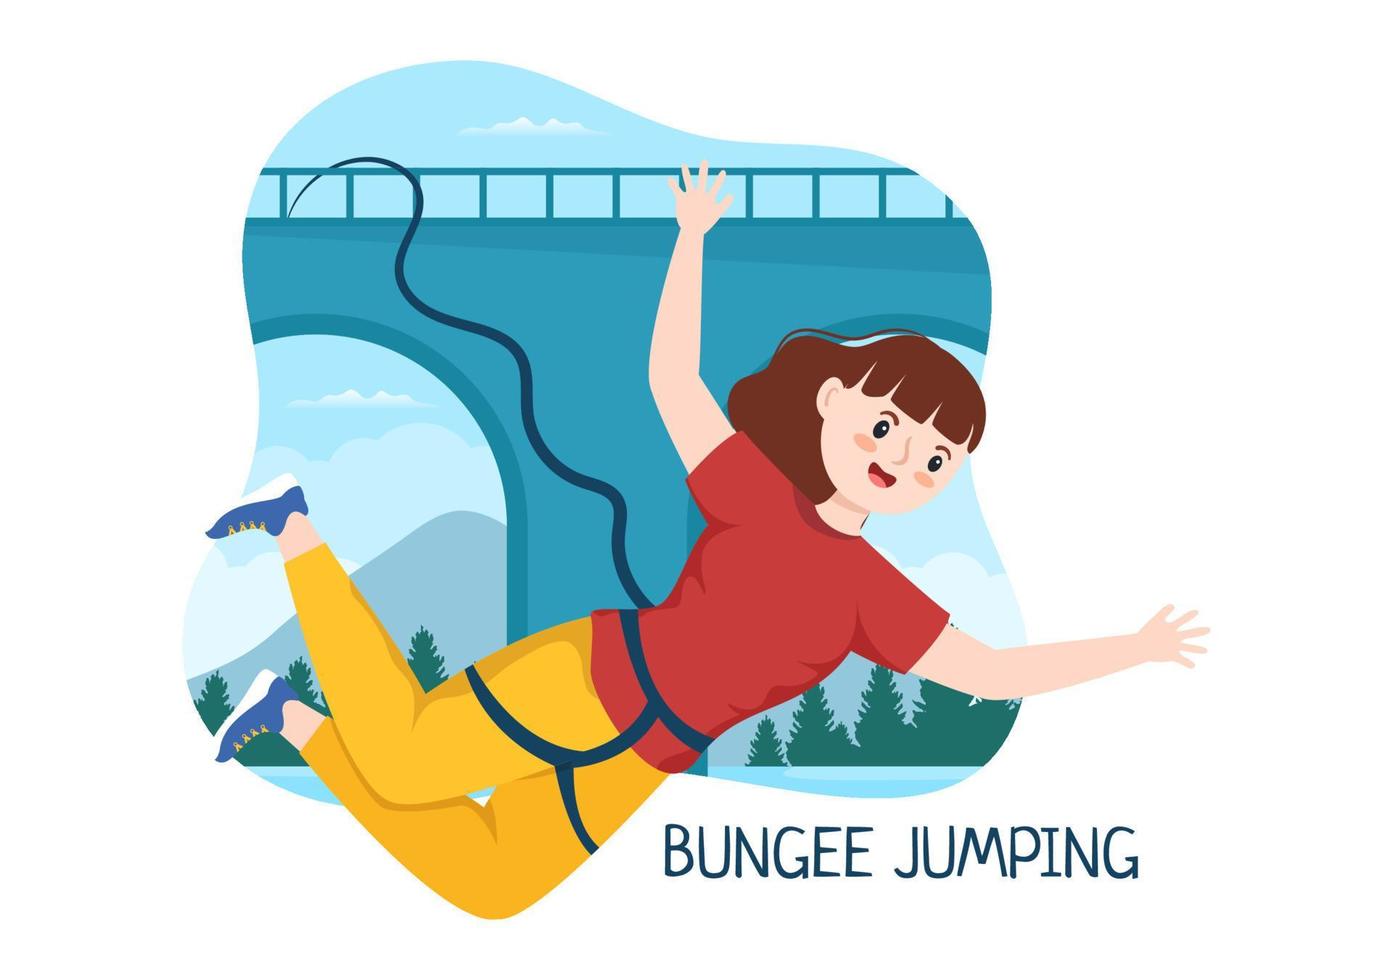 ilustração de bungee jumping com uma pessoa usando uma corda elástica caindo  pulando de uma altura no modelo de vetor de esportes radicais de desenho  animado plano 16638906 Vetor no Vecteezy